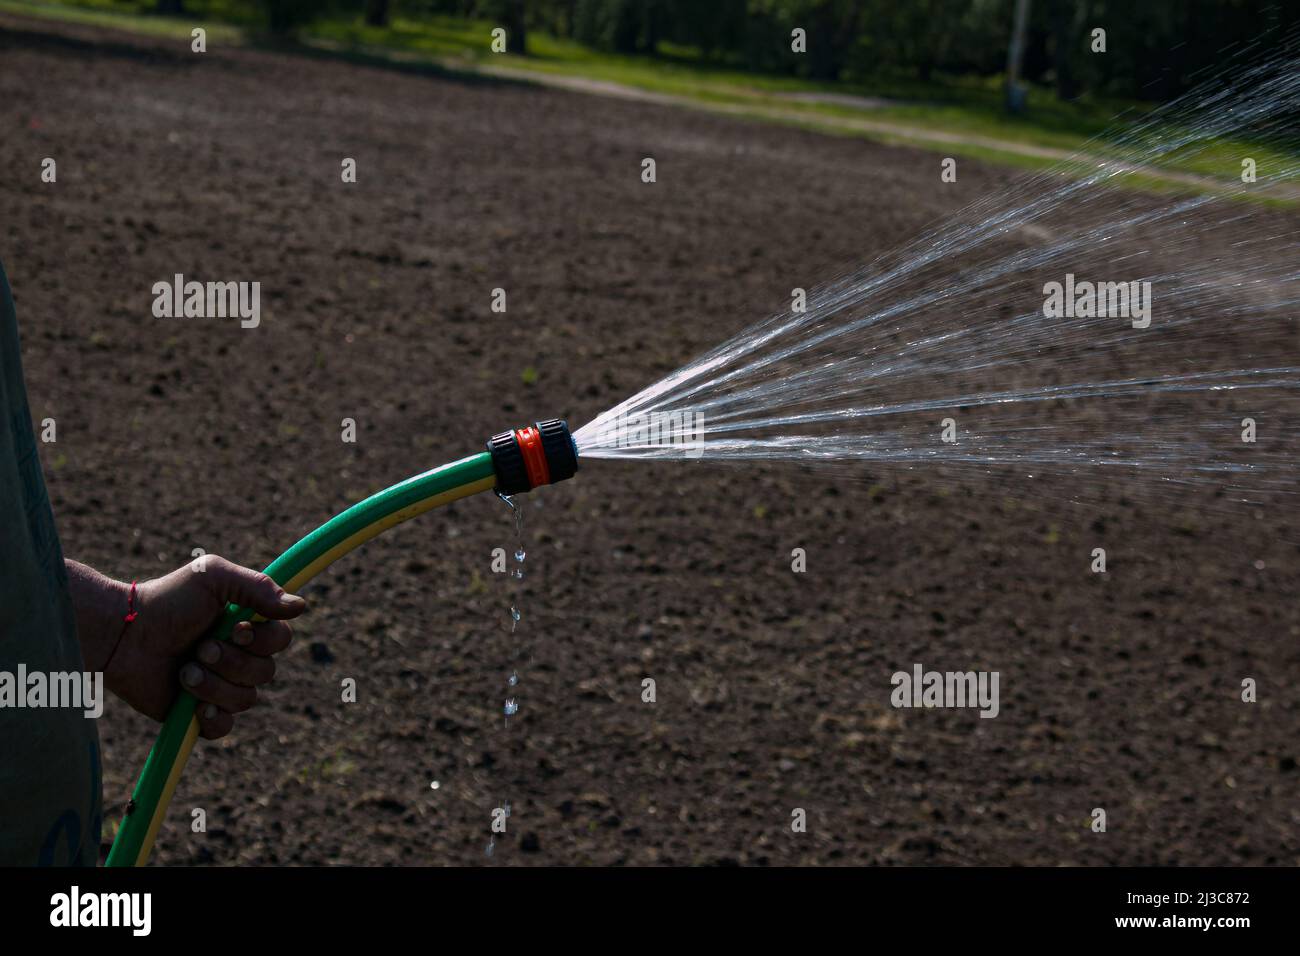 Homme tenant le tuyau pour arroser les plantes dans un jardin. Un jet puissant, un jet d'eau propre, des gouttes dirigées vers les plantes, sur une pelouse. Soin du jardin en été Banque D'Images